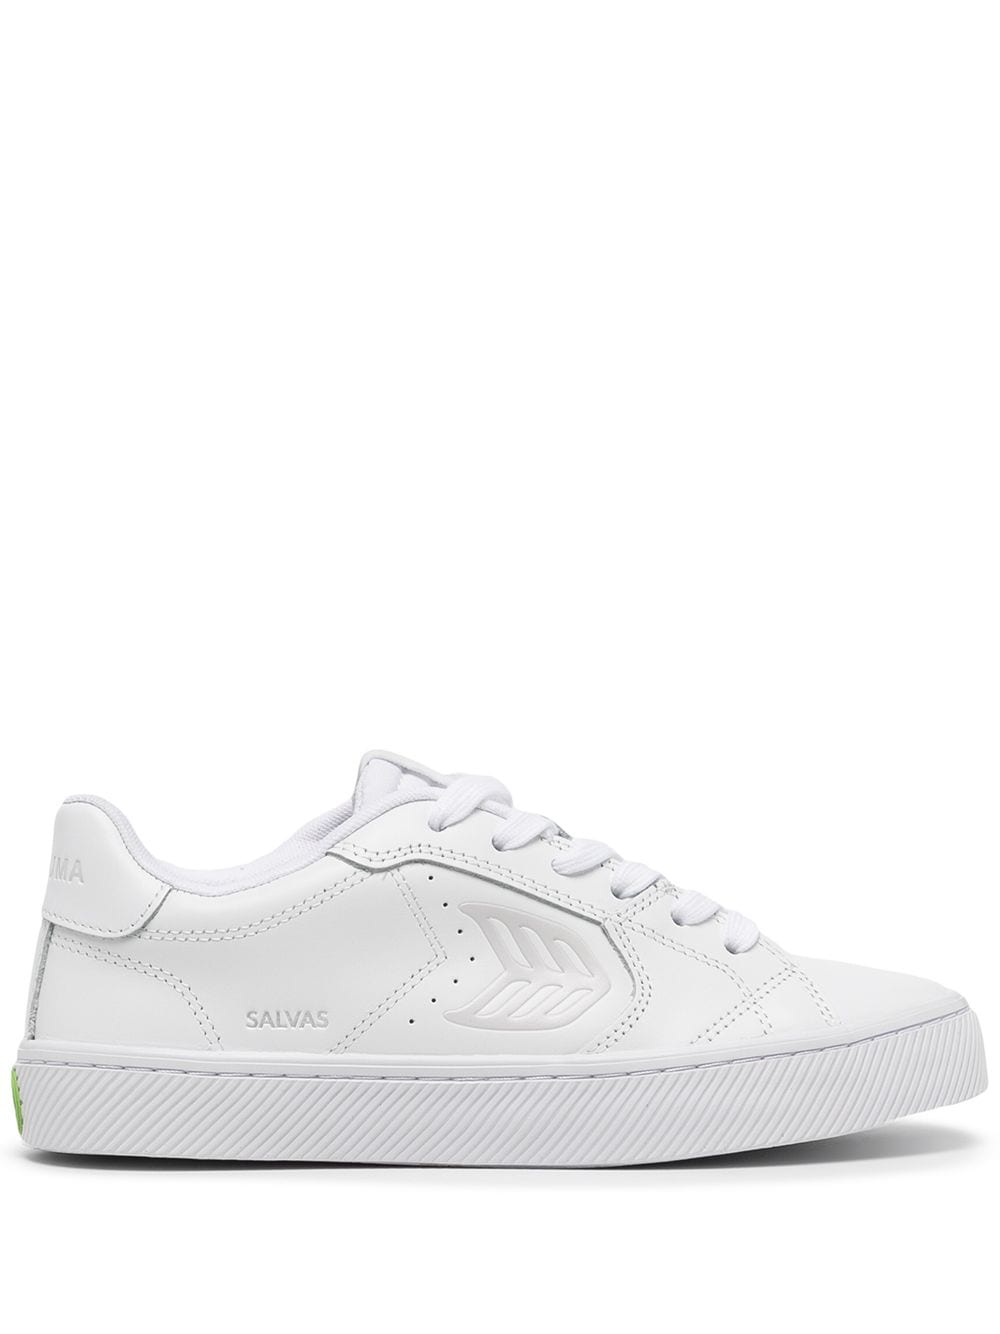 Cariuma Salvas low-top sneakers - White von Cariuma